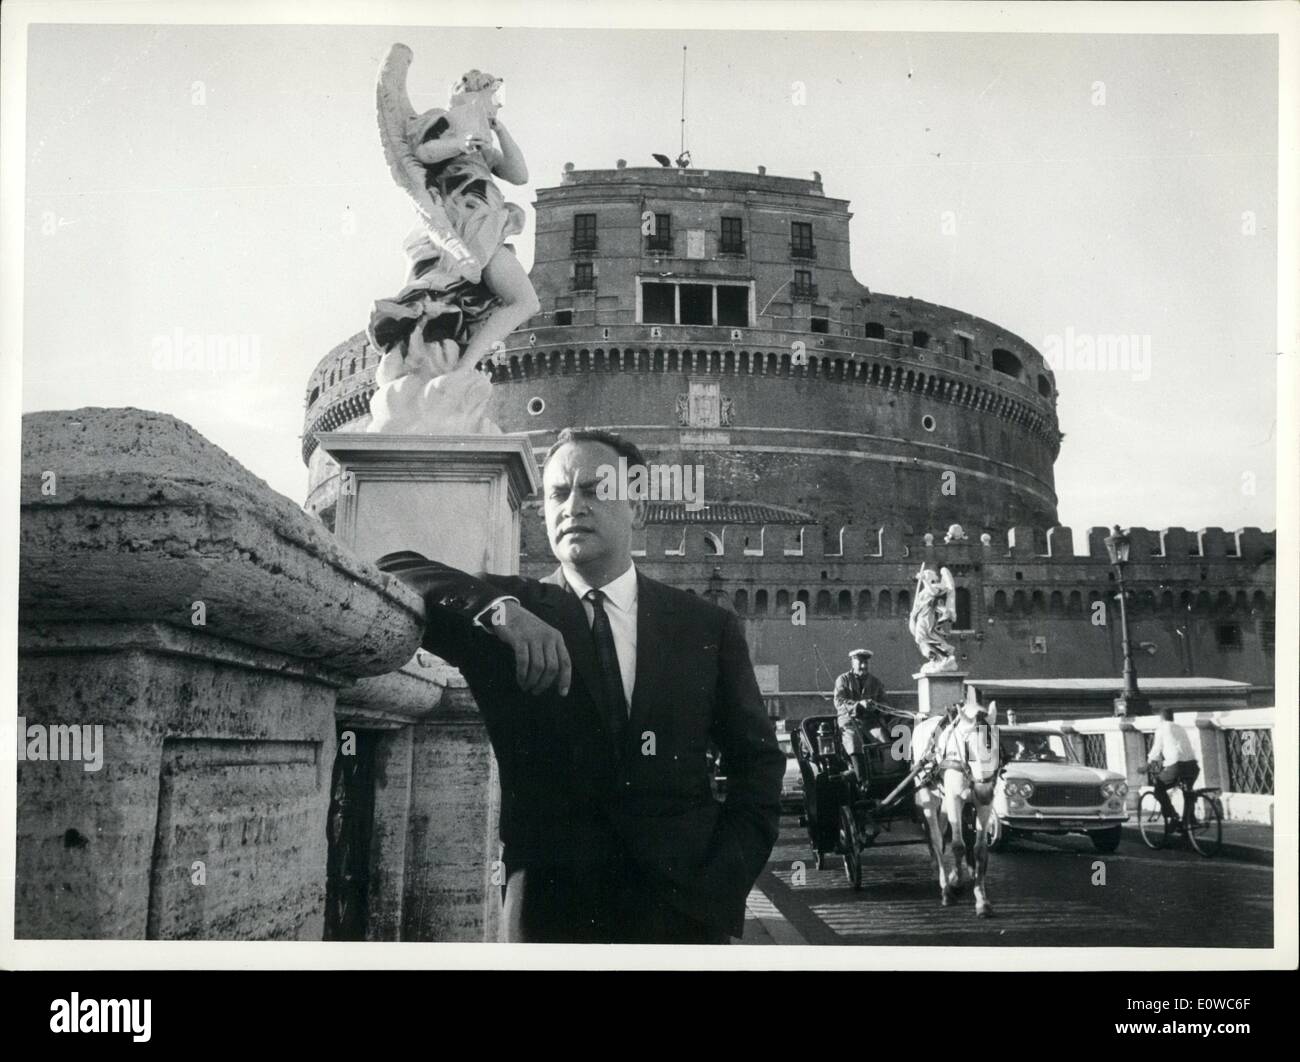 05. Mai 1962 - Raymond Pellegrin gut - kennen französisch Schauspieler Interpret vieler wichtiger Filme in Rom angekommen, um in ''Venere Imperiae''' eine französisch - italienische coo-Produktion, wo er die Rolle von Napoleon, Co-Star Ring mit Gina Lollobrigida unter der Leitung von Jean Dellannoy, Das letzte Mal, als R. Pellegrin nach Rom kam, war es ein Jahr her, aber sie hatte er keine Gelegenheit, die Stadt zu besuchen, heute nahmen wir ihn zum Schloss santangele und er war überrascht, all diese schönen Antiquitäten zu bewundern, die im Schloss santangelo gezeigt werden Stockfoto